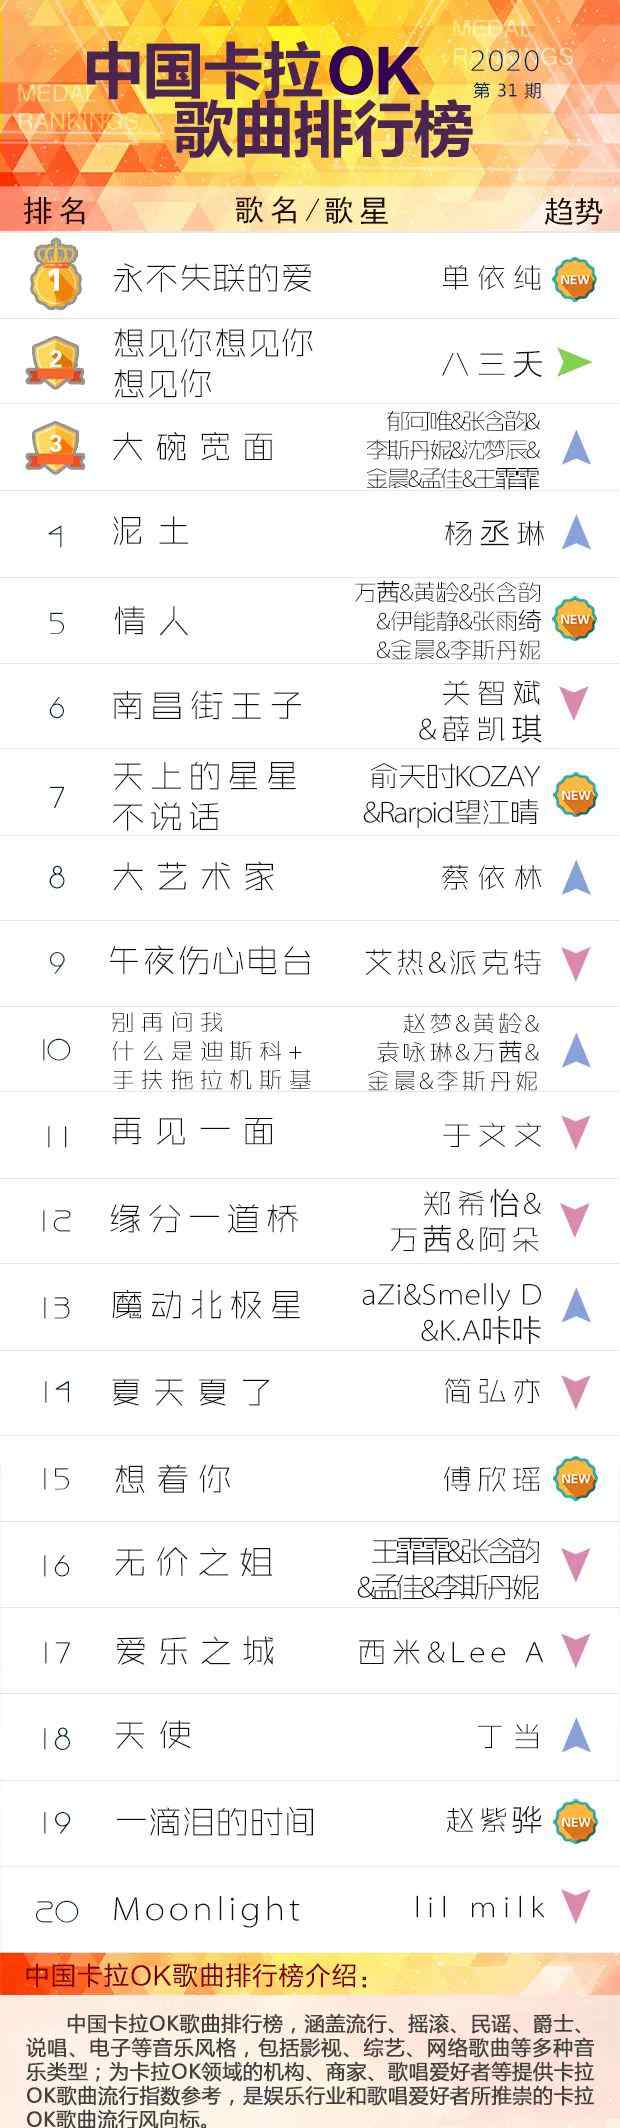 全国ktv排行榜 中国卡拉OK歌曲排行榜